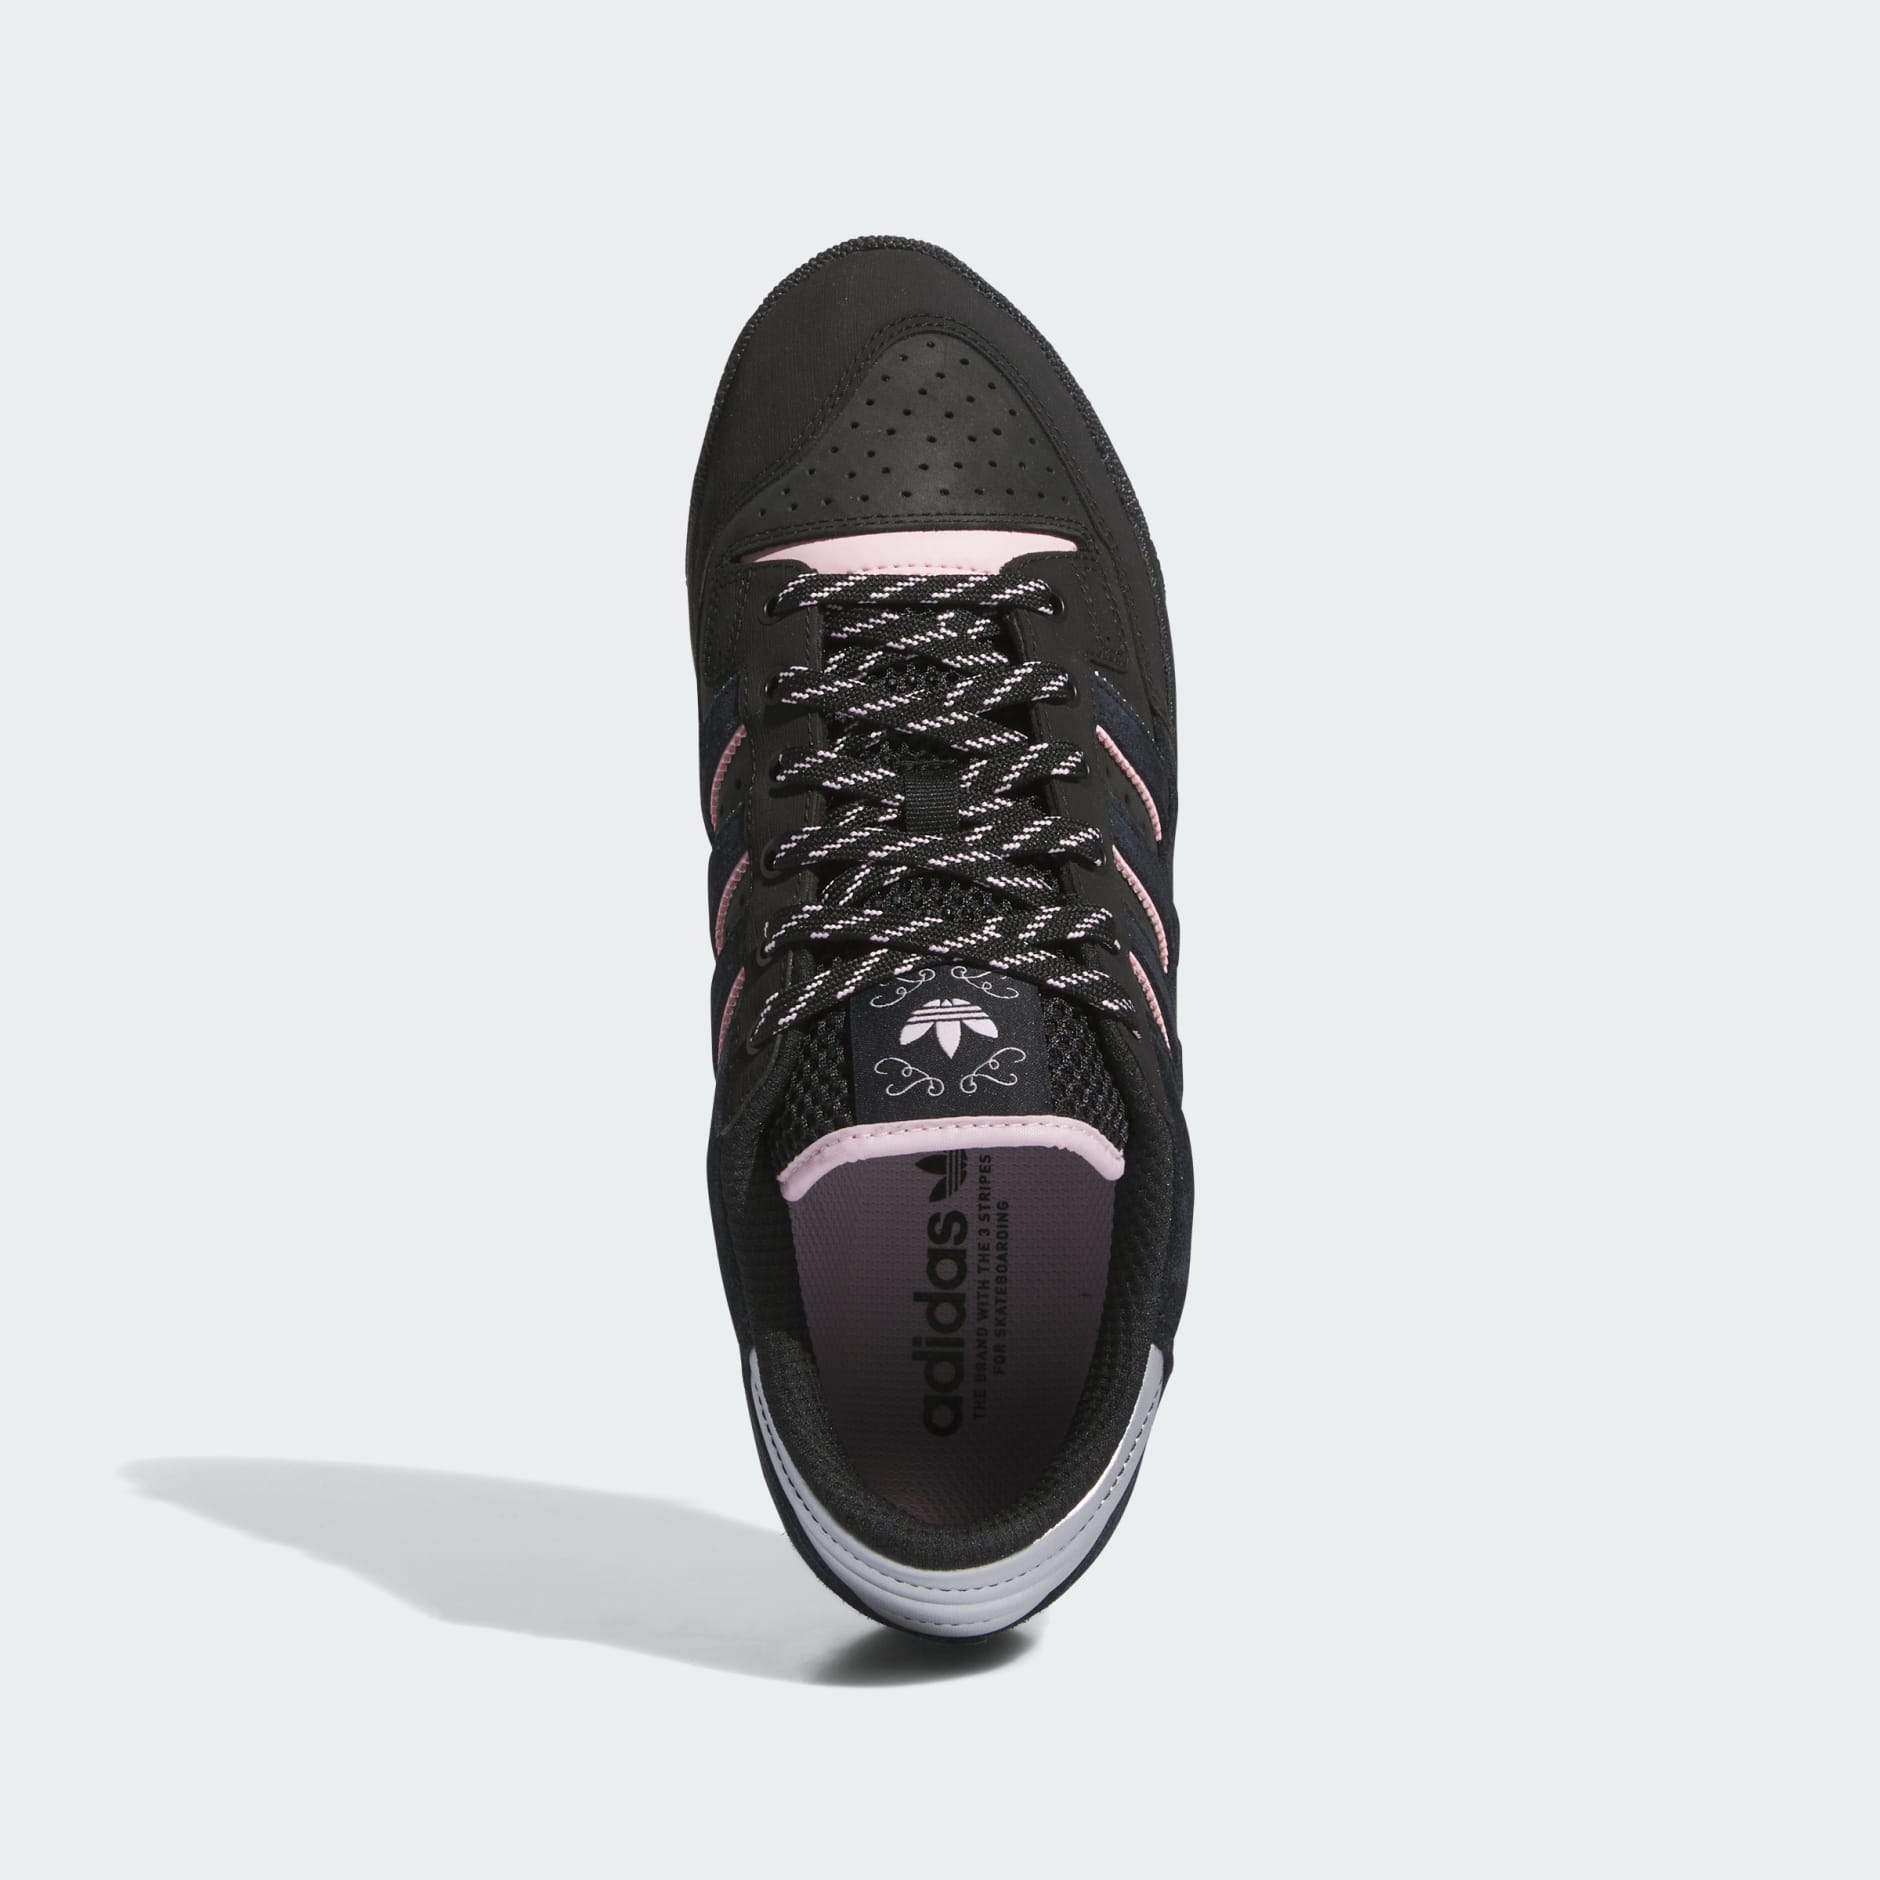 Men's Shoes - Centennial 85 Low ADV x Dre Shoes - Black | adidas Oman